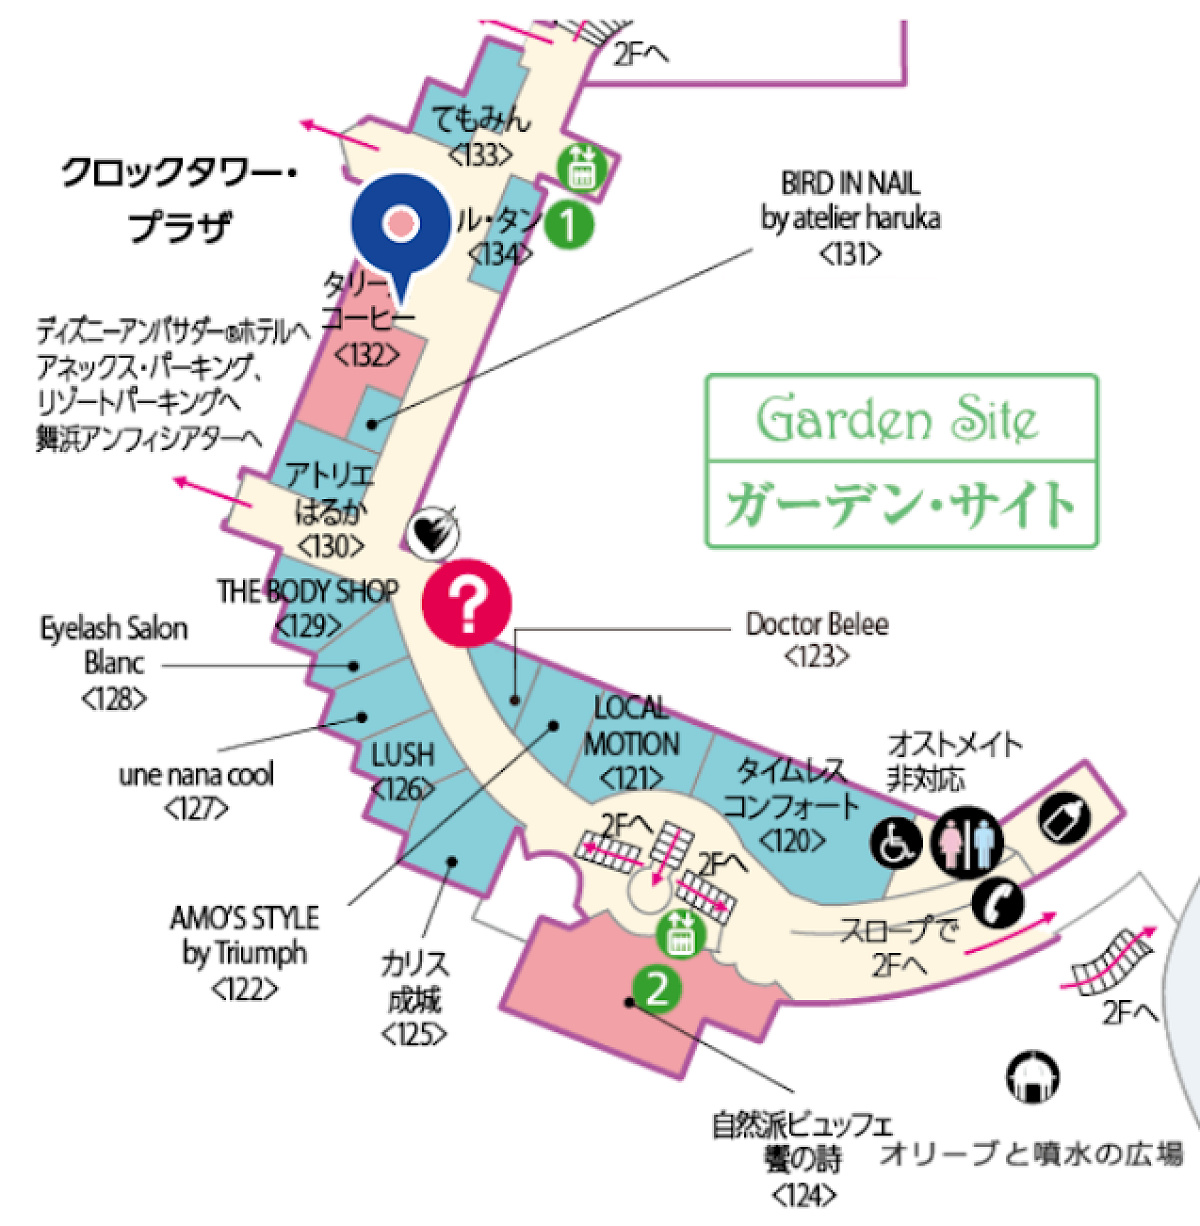 ガーデン・サイトの地図